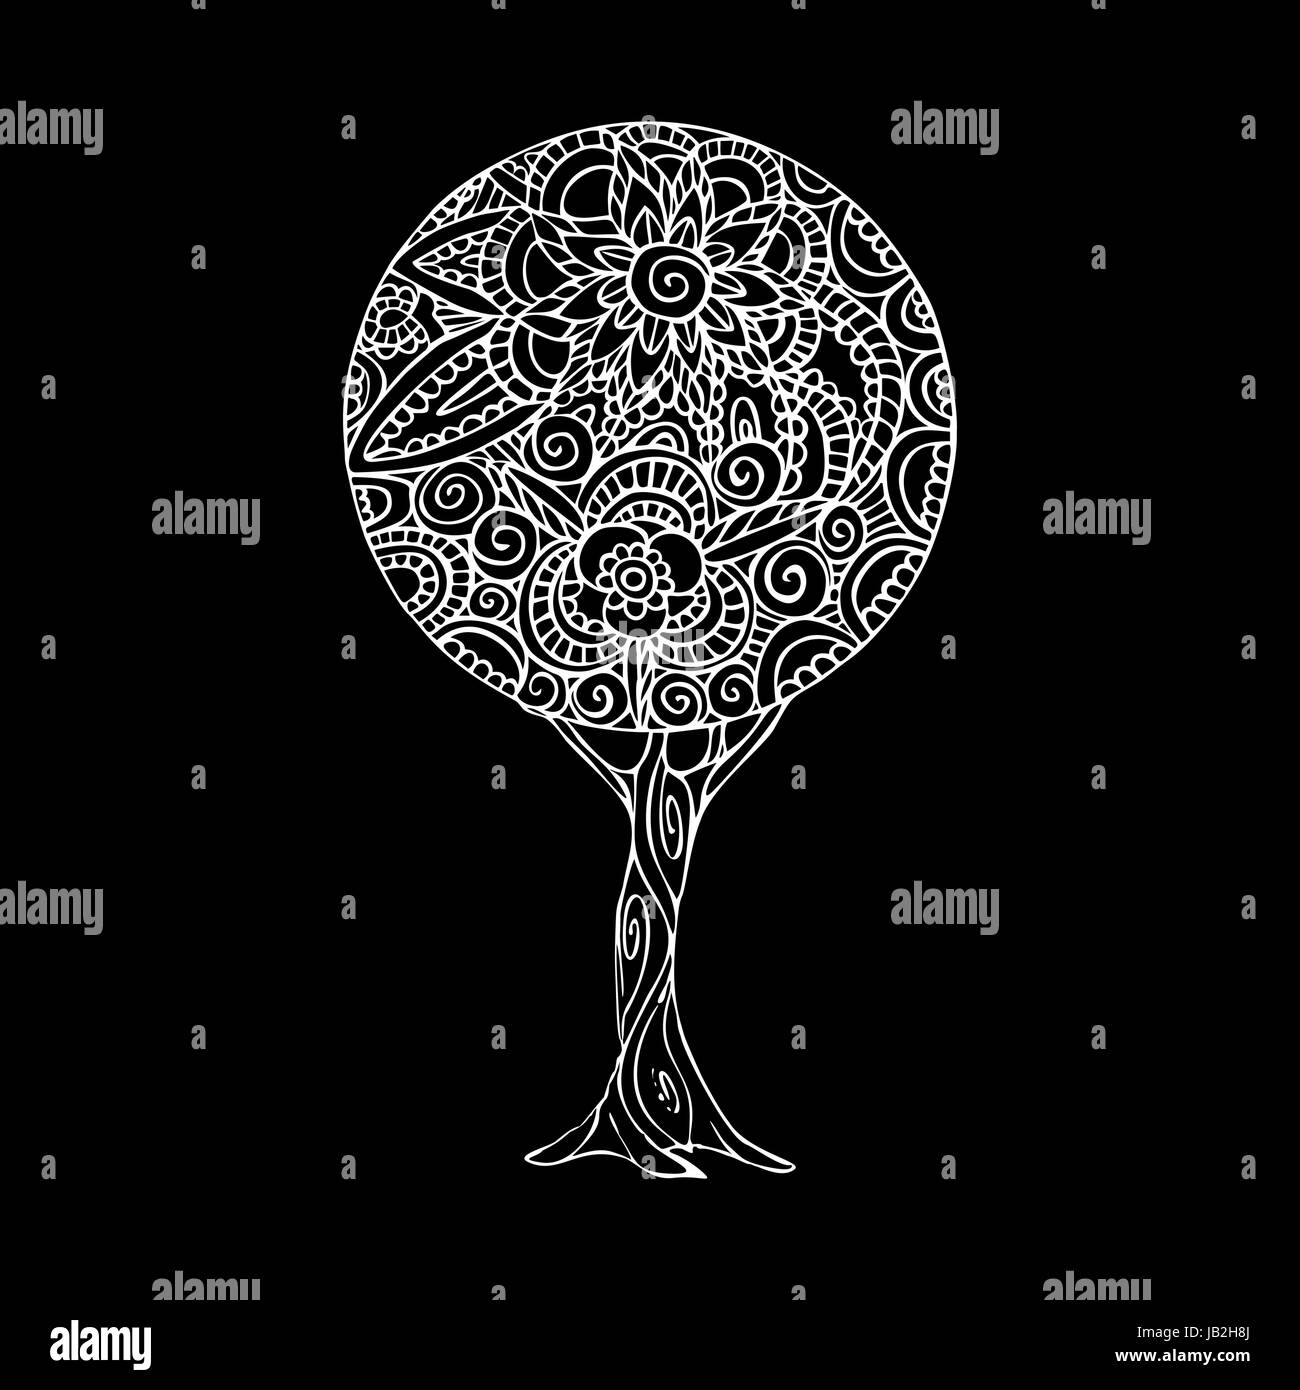 Illustration de l'arbre de noir et de blanc à la main, design mandala décoration florale traditionnelle de style ethnique. Vecteur EPS10. Illustration de Vecteur